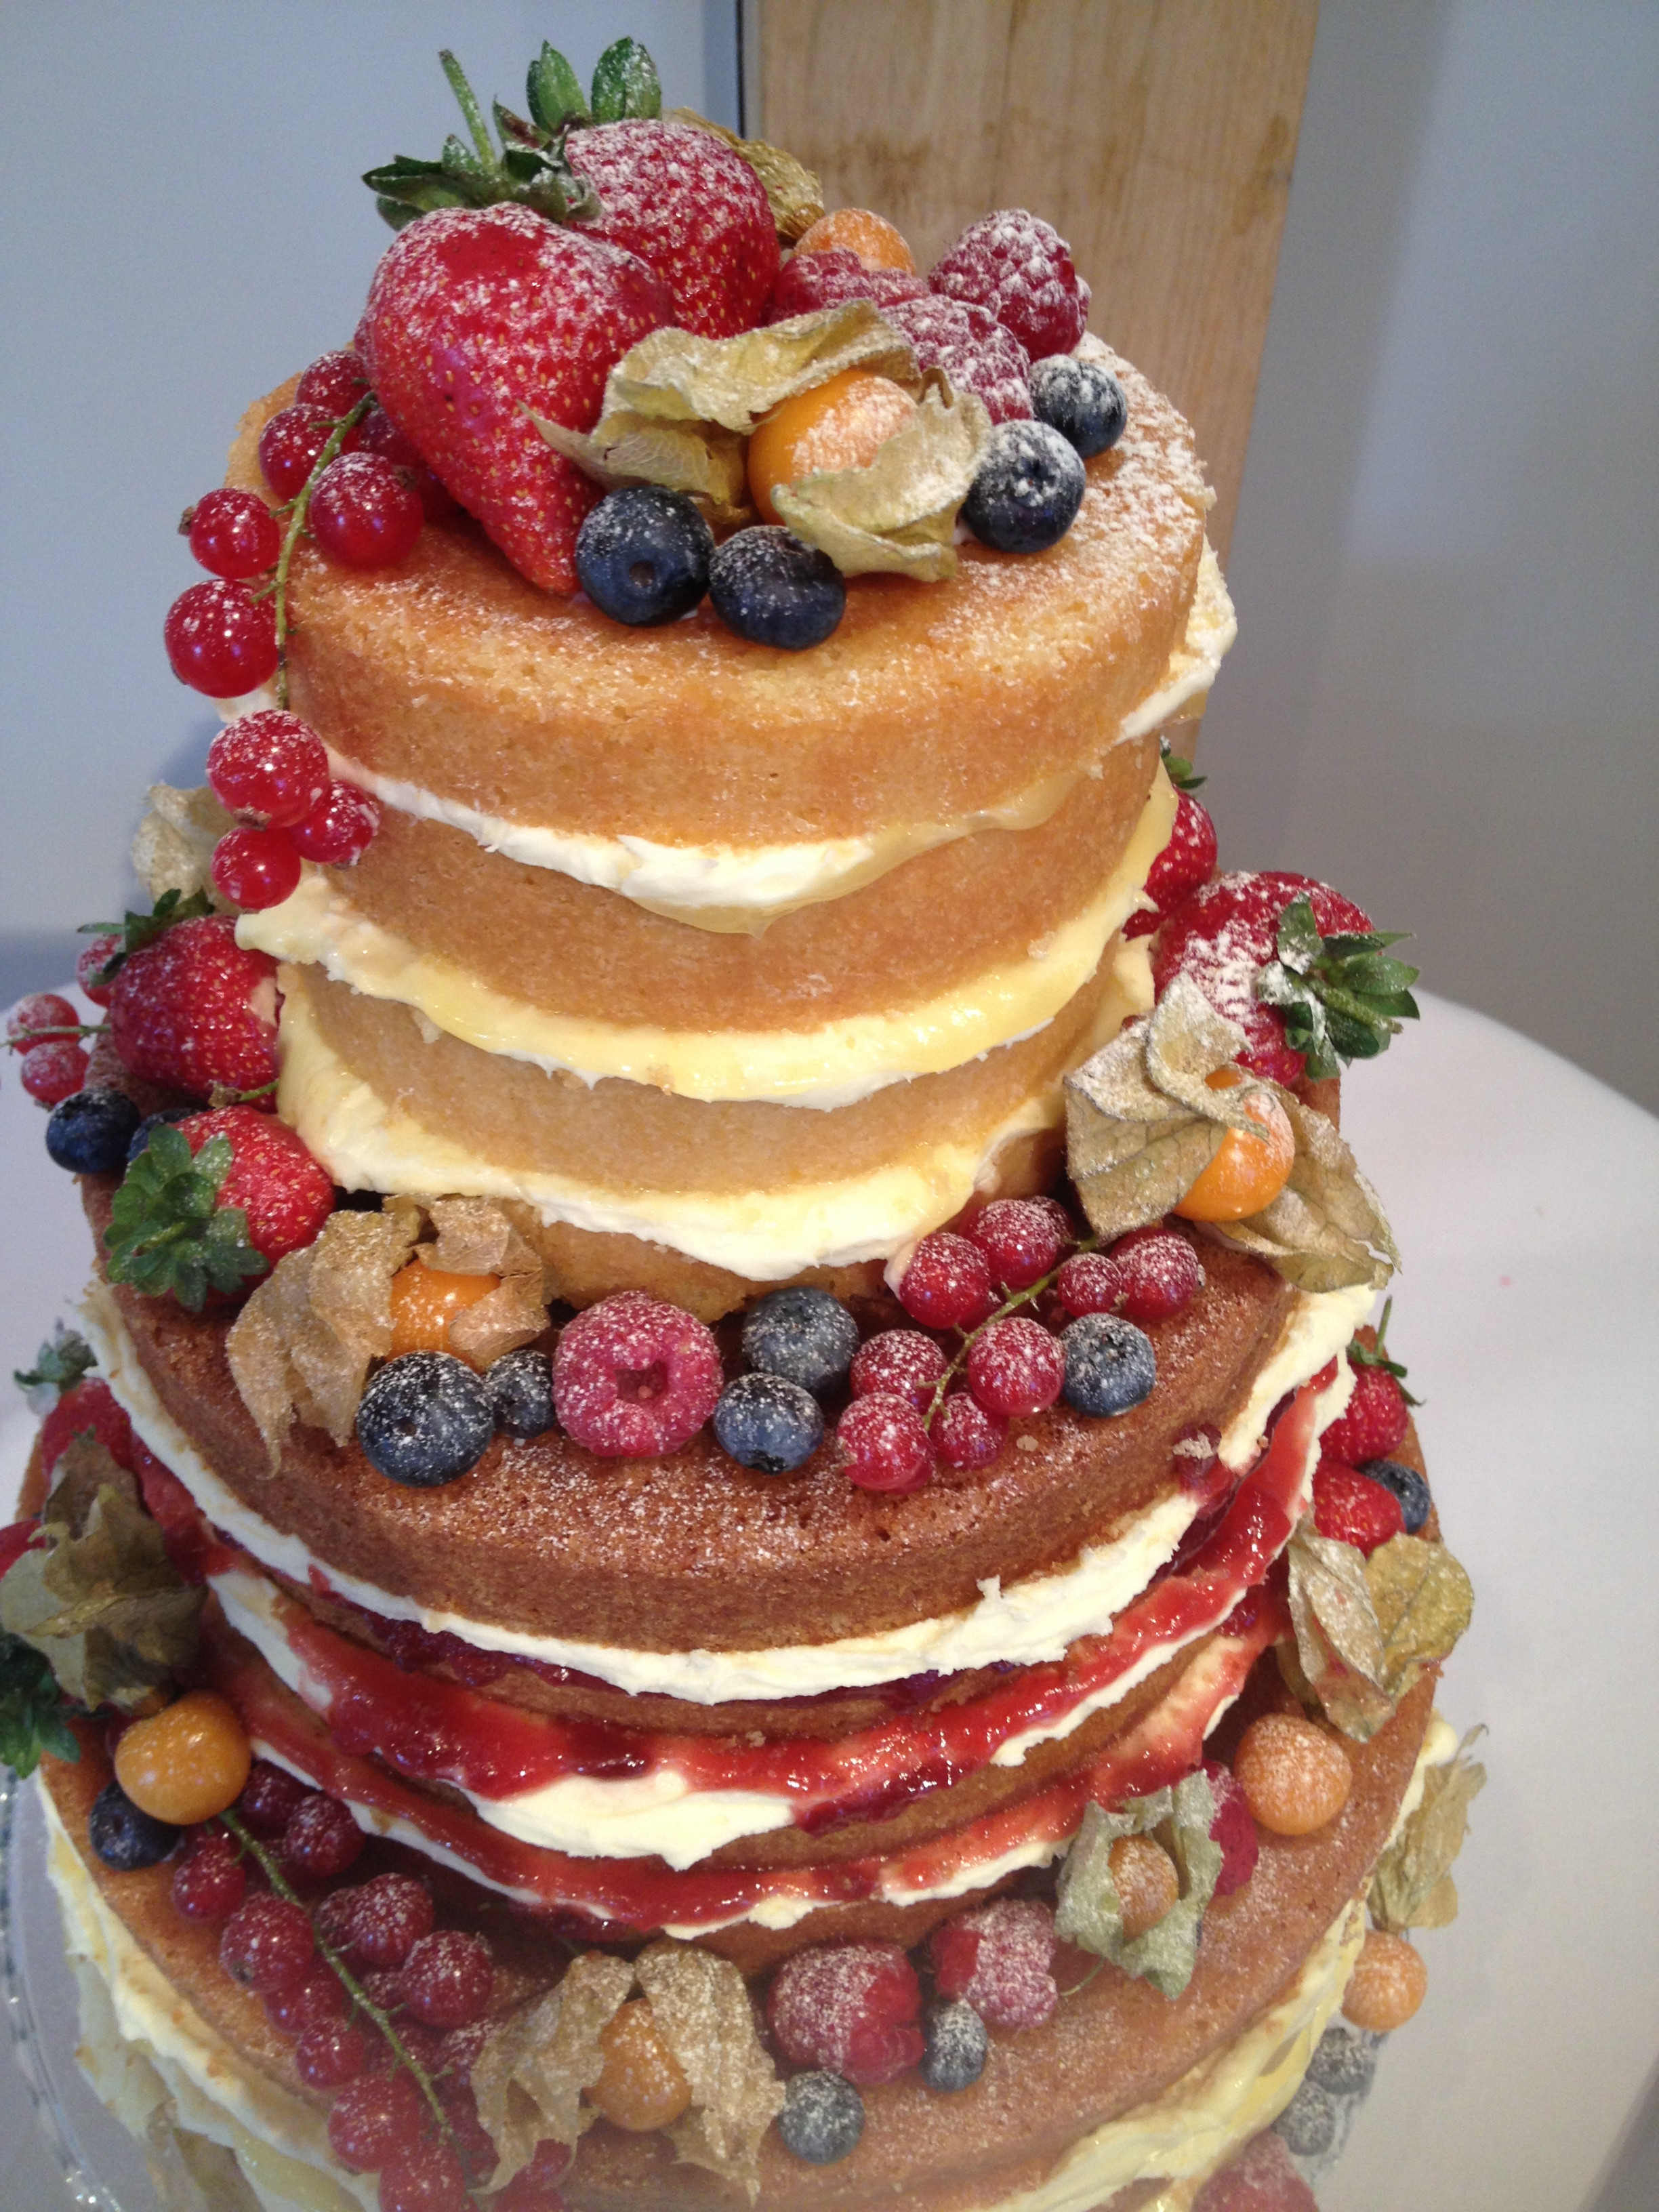 Fruity Wedding Cakes
 Naked wedding cake with fresh fruit